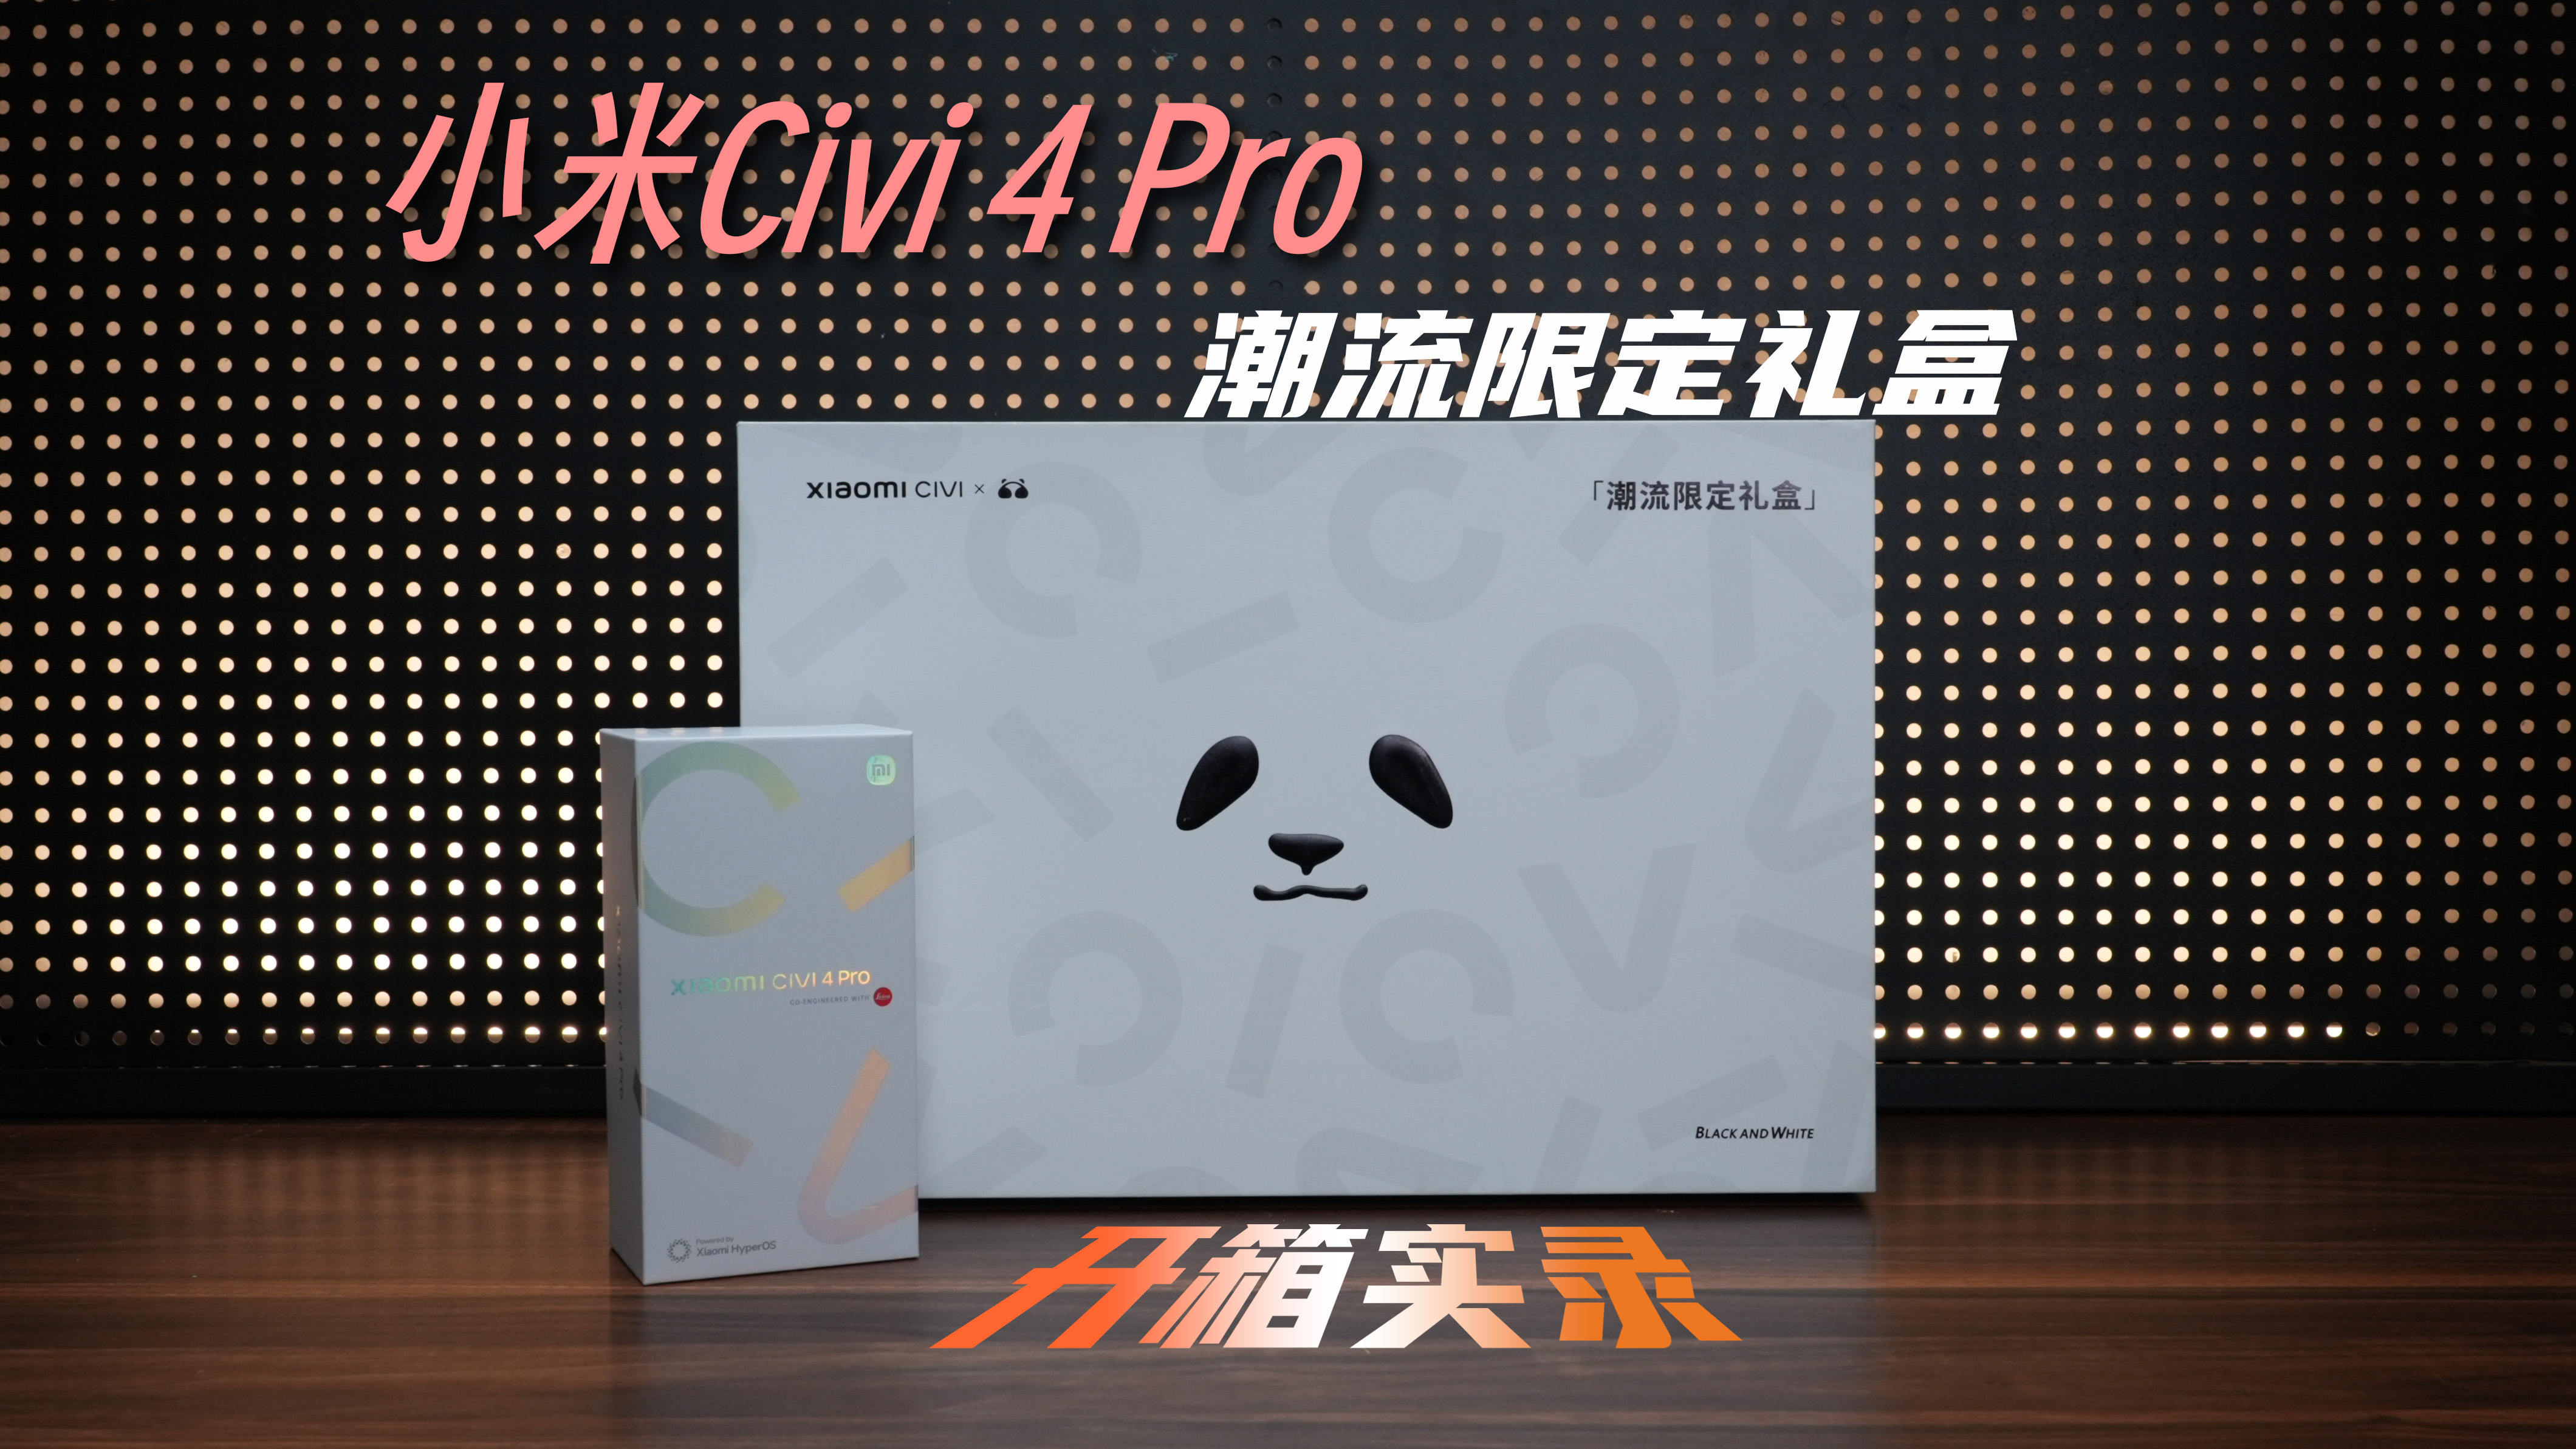 粉色的小米Civi 4 Pro搭配潮流限定礼盒 这种配置 你爱了么？